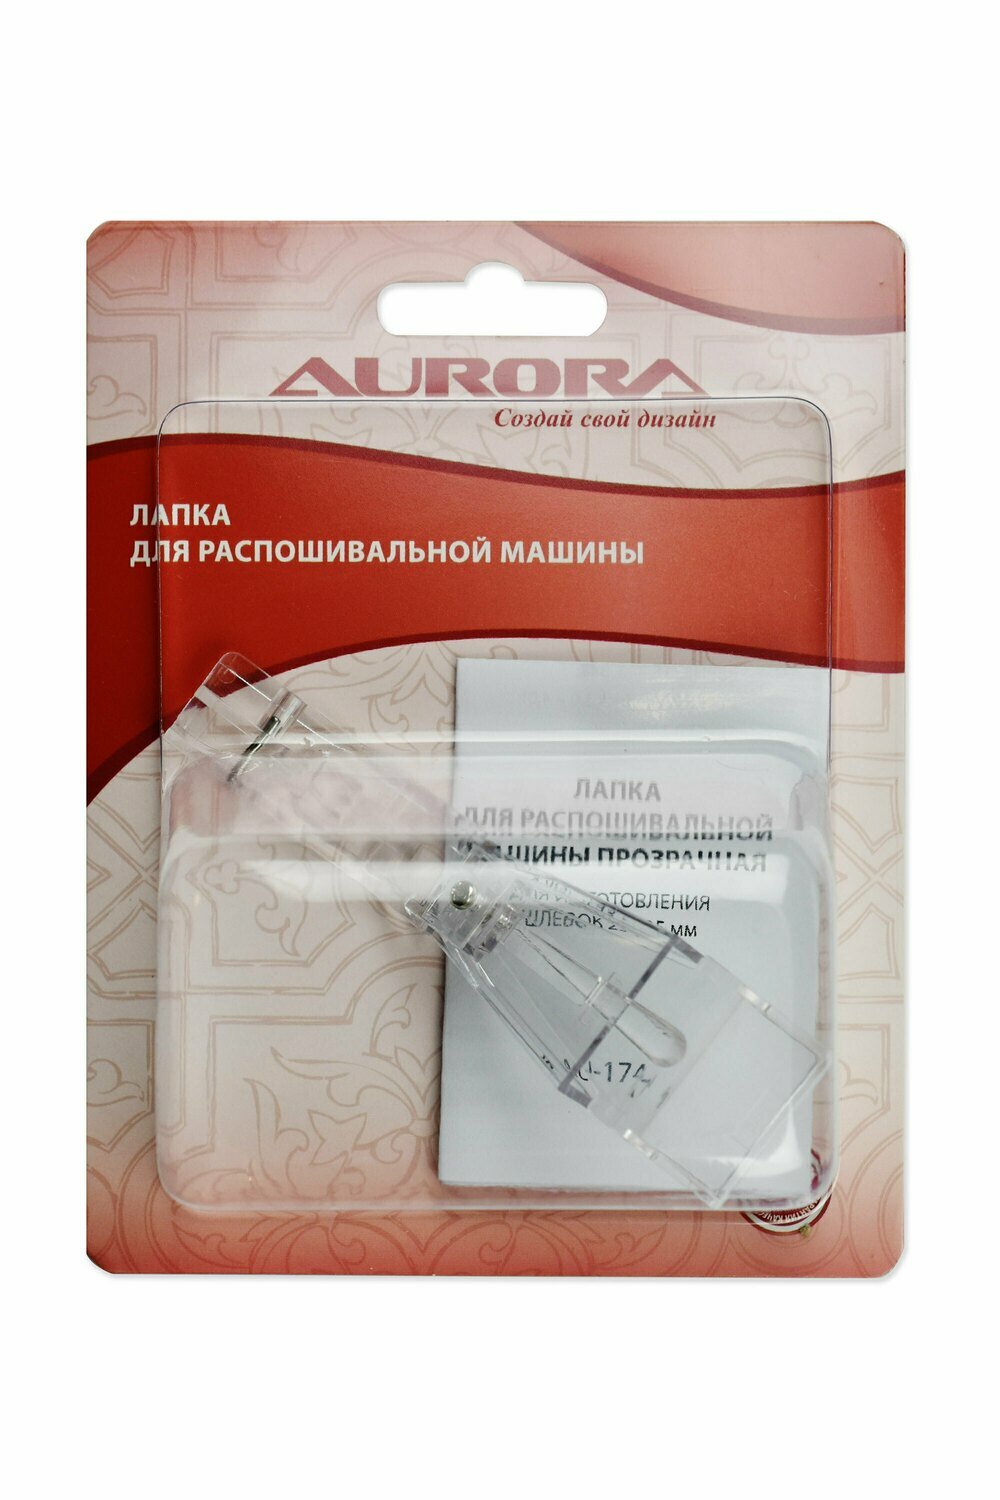 Лапка для распошивальной машины для изготовления шлевок 23-25мм Aurora